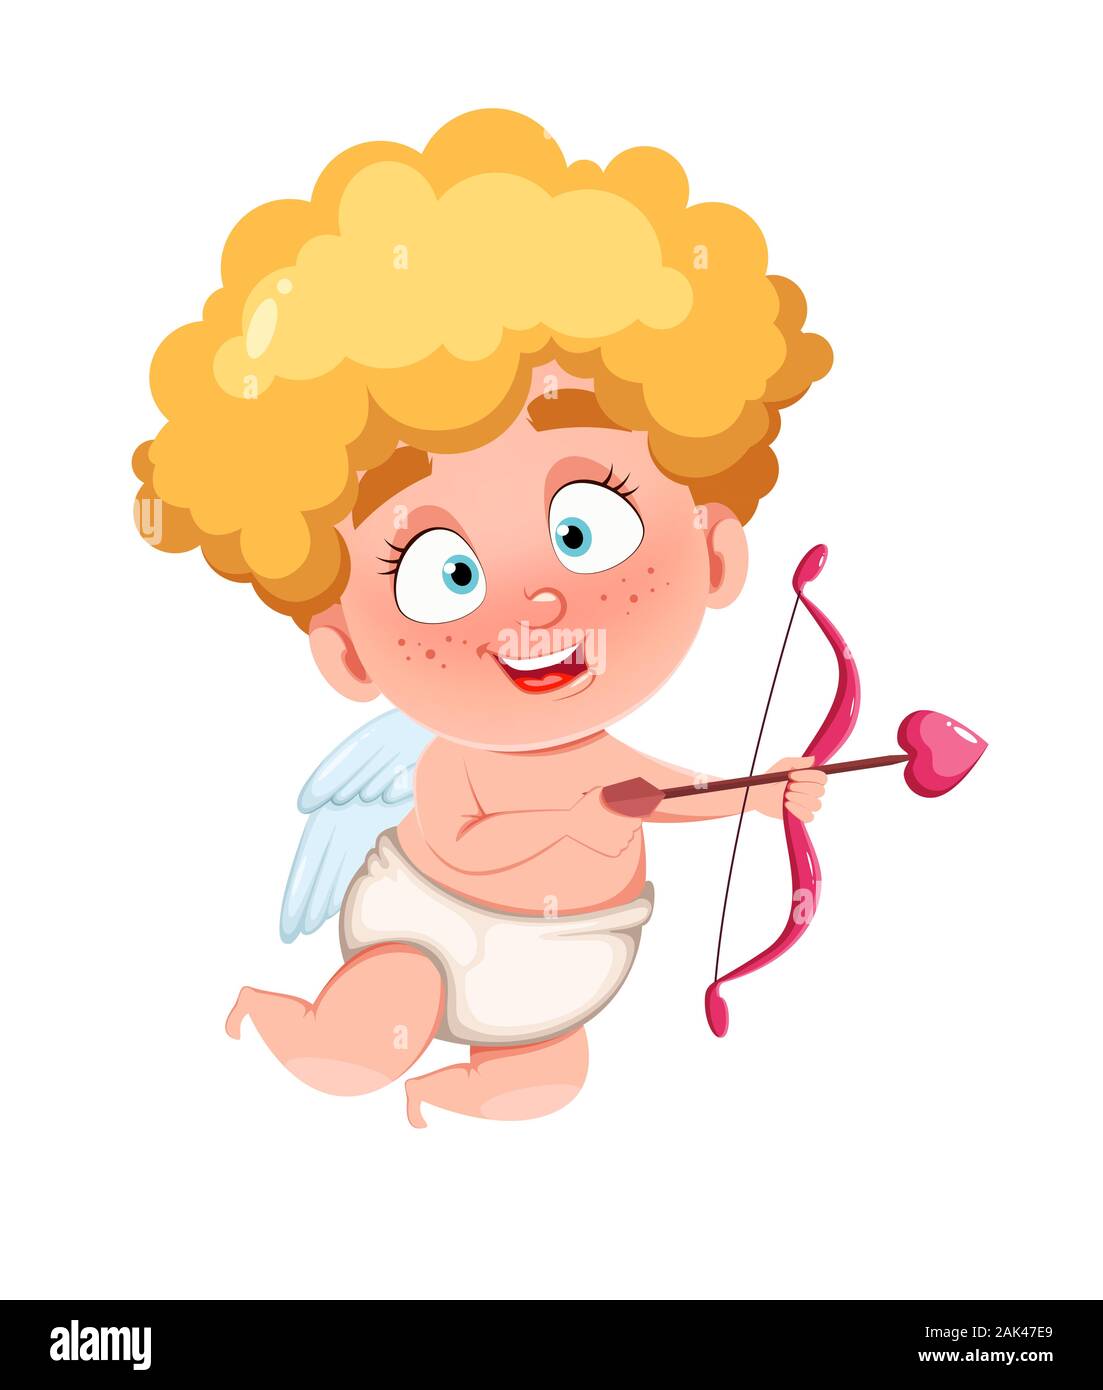 Buon San Valentino Cupido Divertenti Riprese Di Capretto Amore Freccia Il Simpatico Personaggio Dei Fumetti Illustrazione Di Vettore Isolato Su Sfondo Bianco Immagine E Vettoriale Alamy